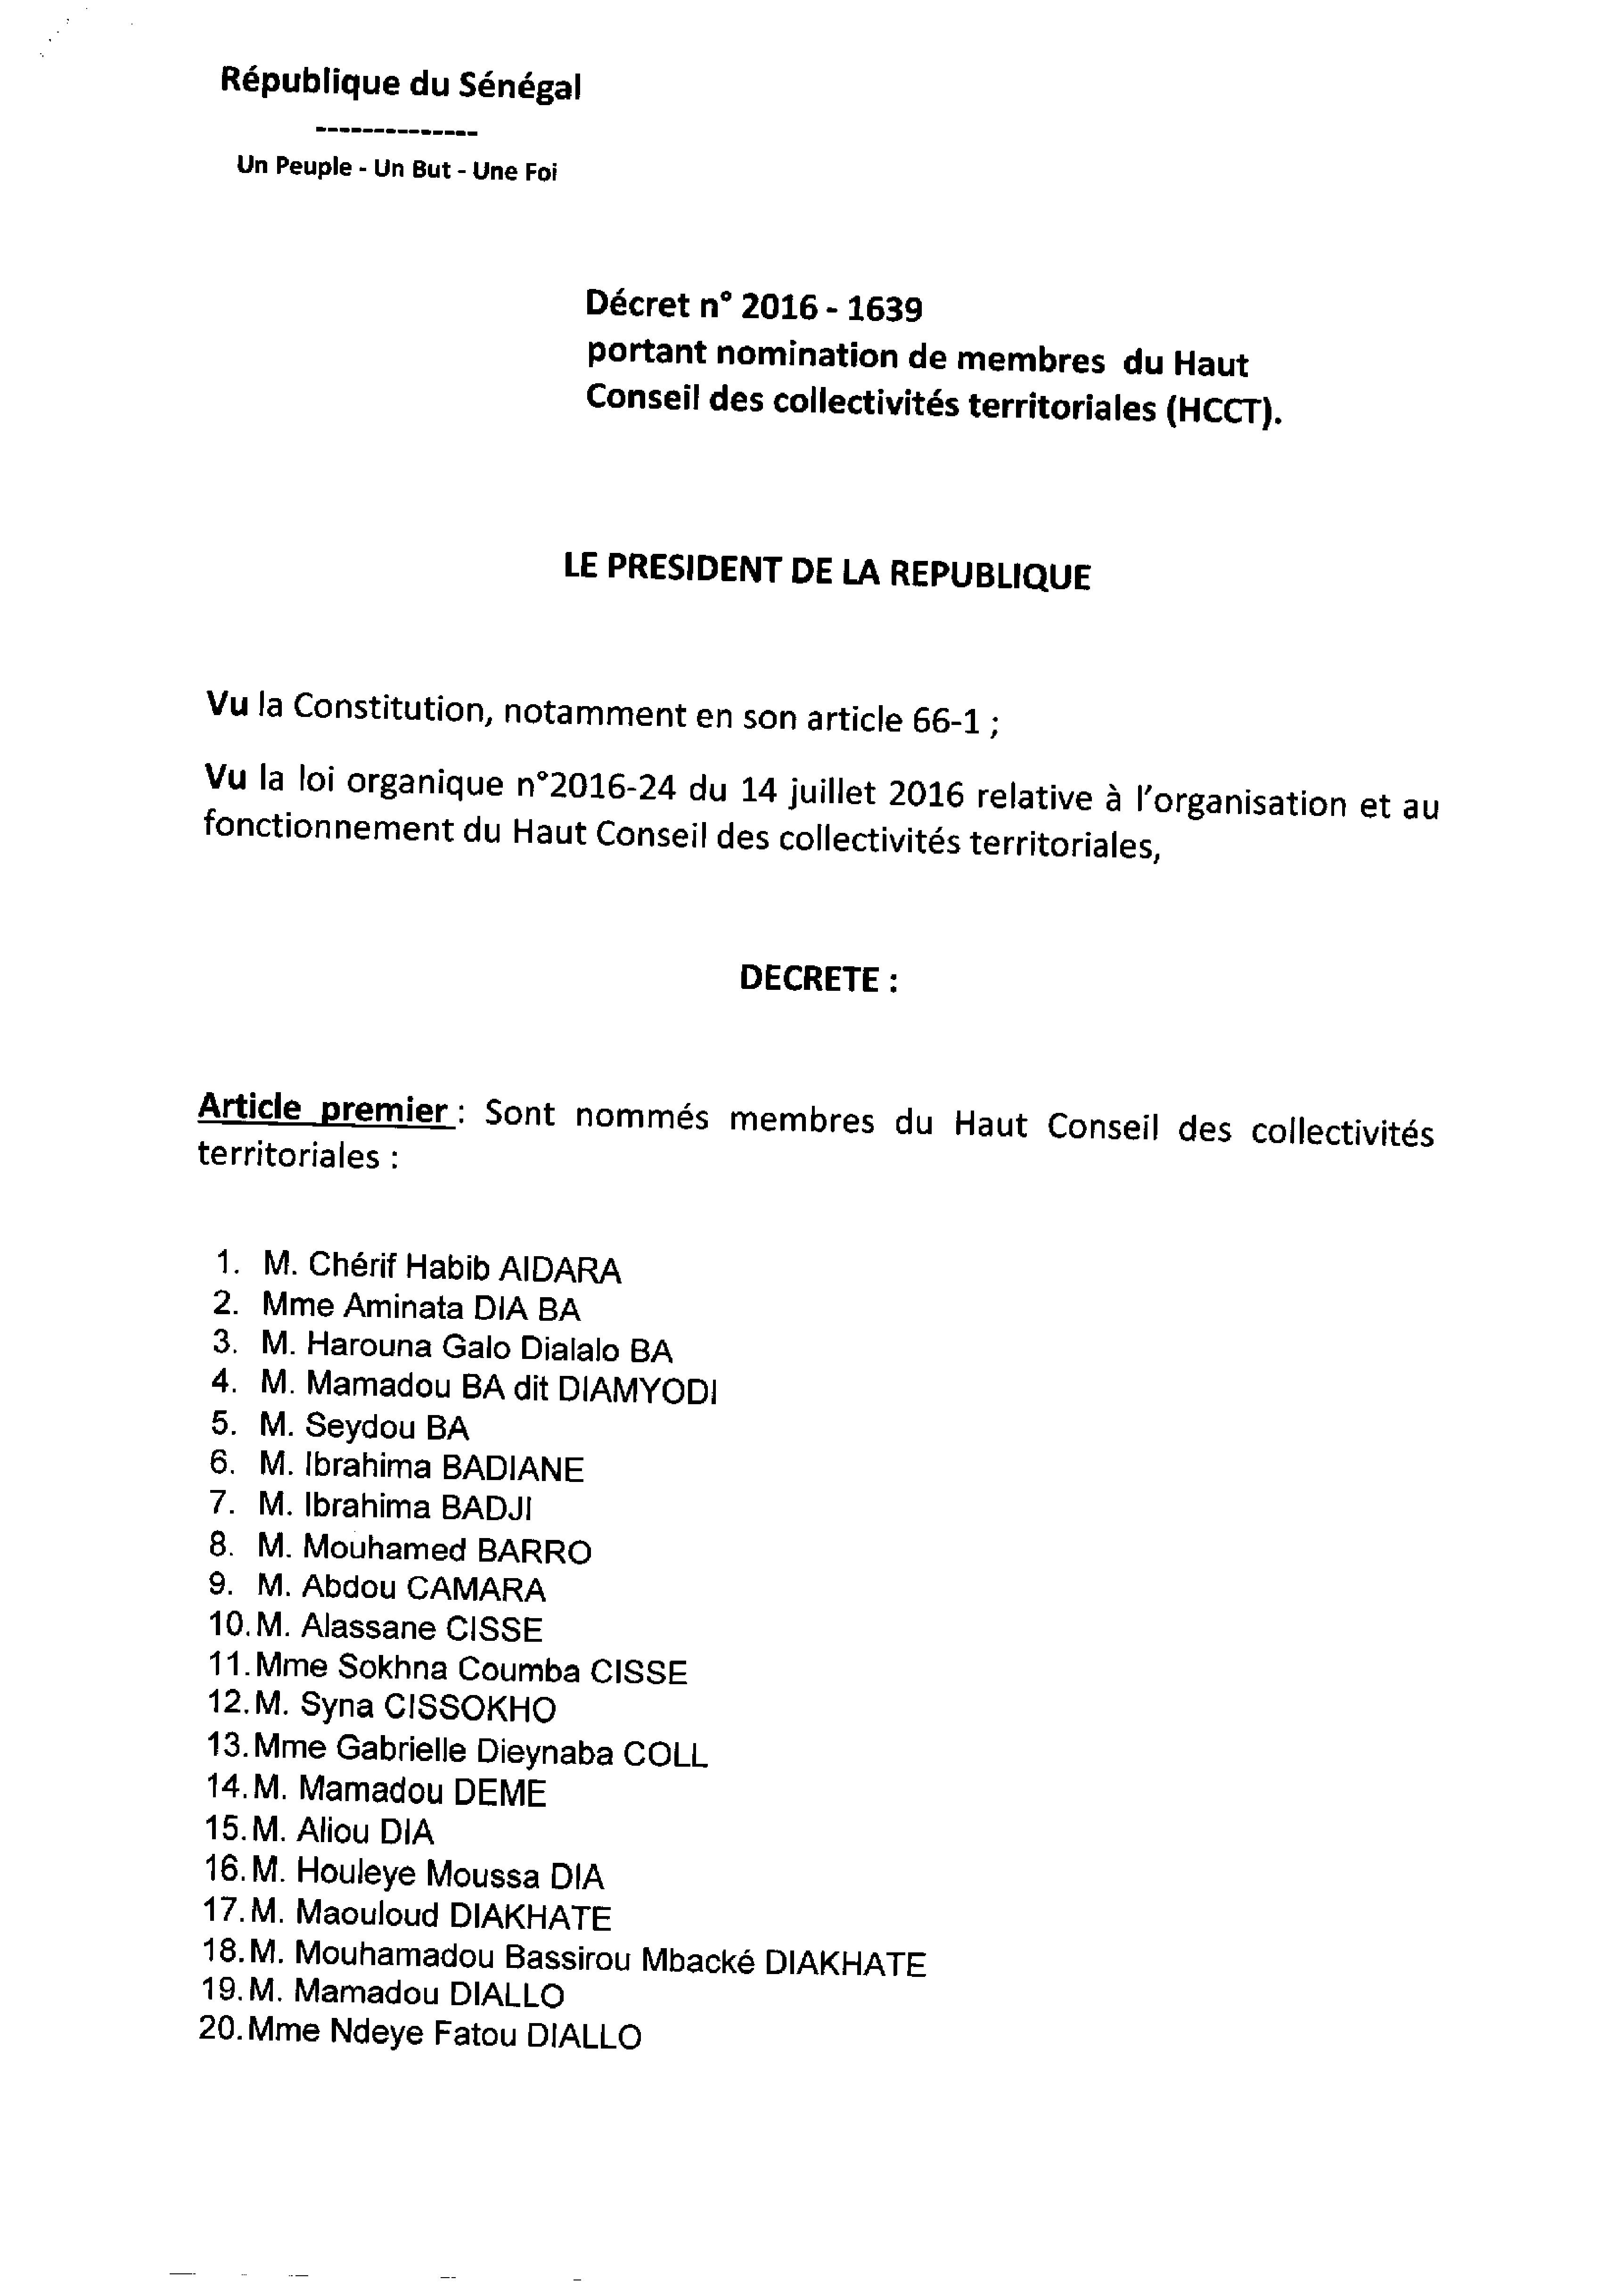 EXCLUSIF: les décrets du Haut Conseil des Collectivités territoriales (HCCT)